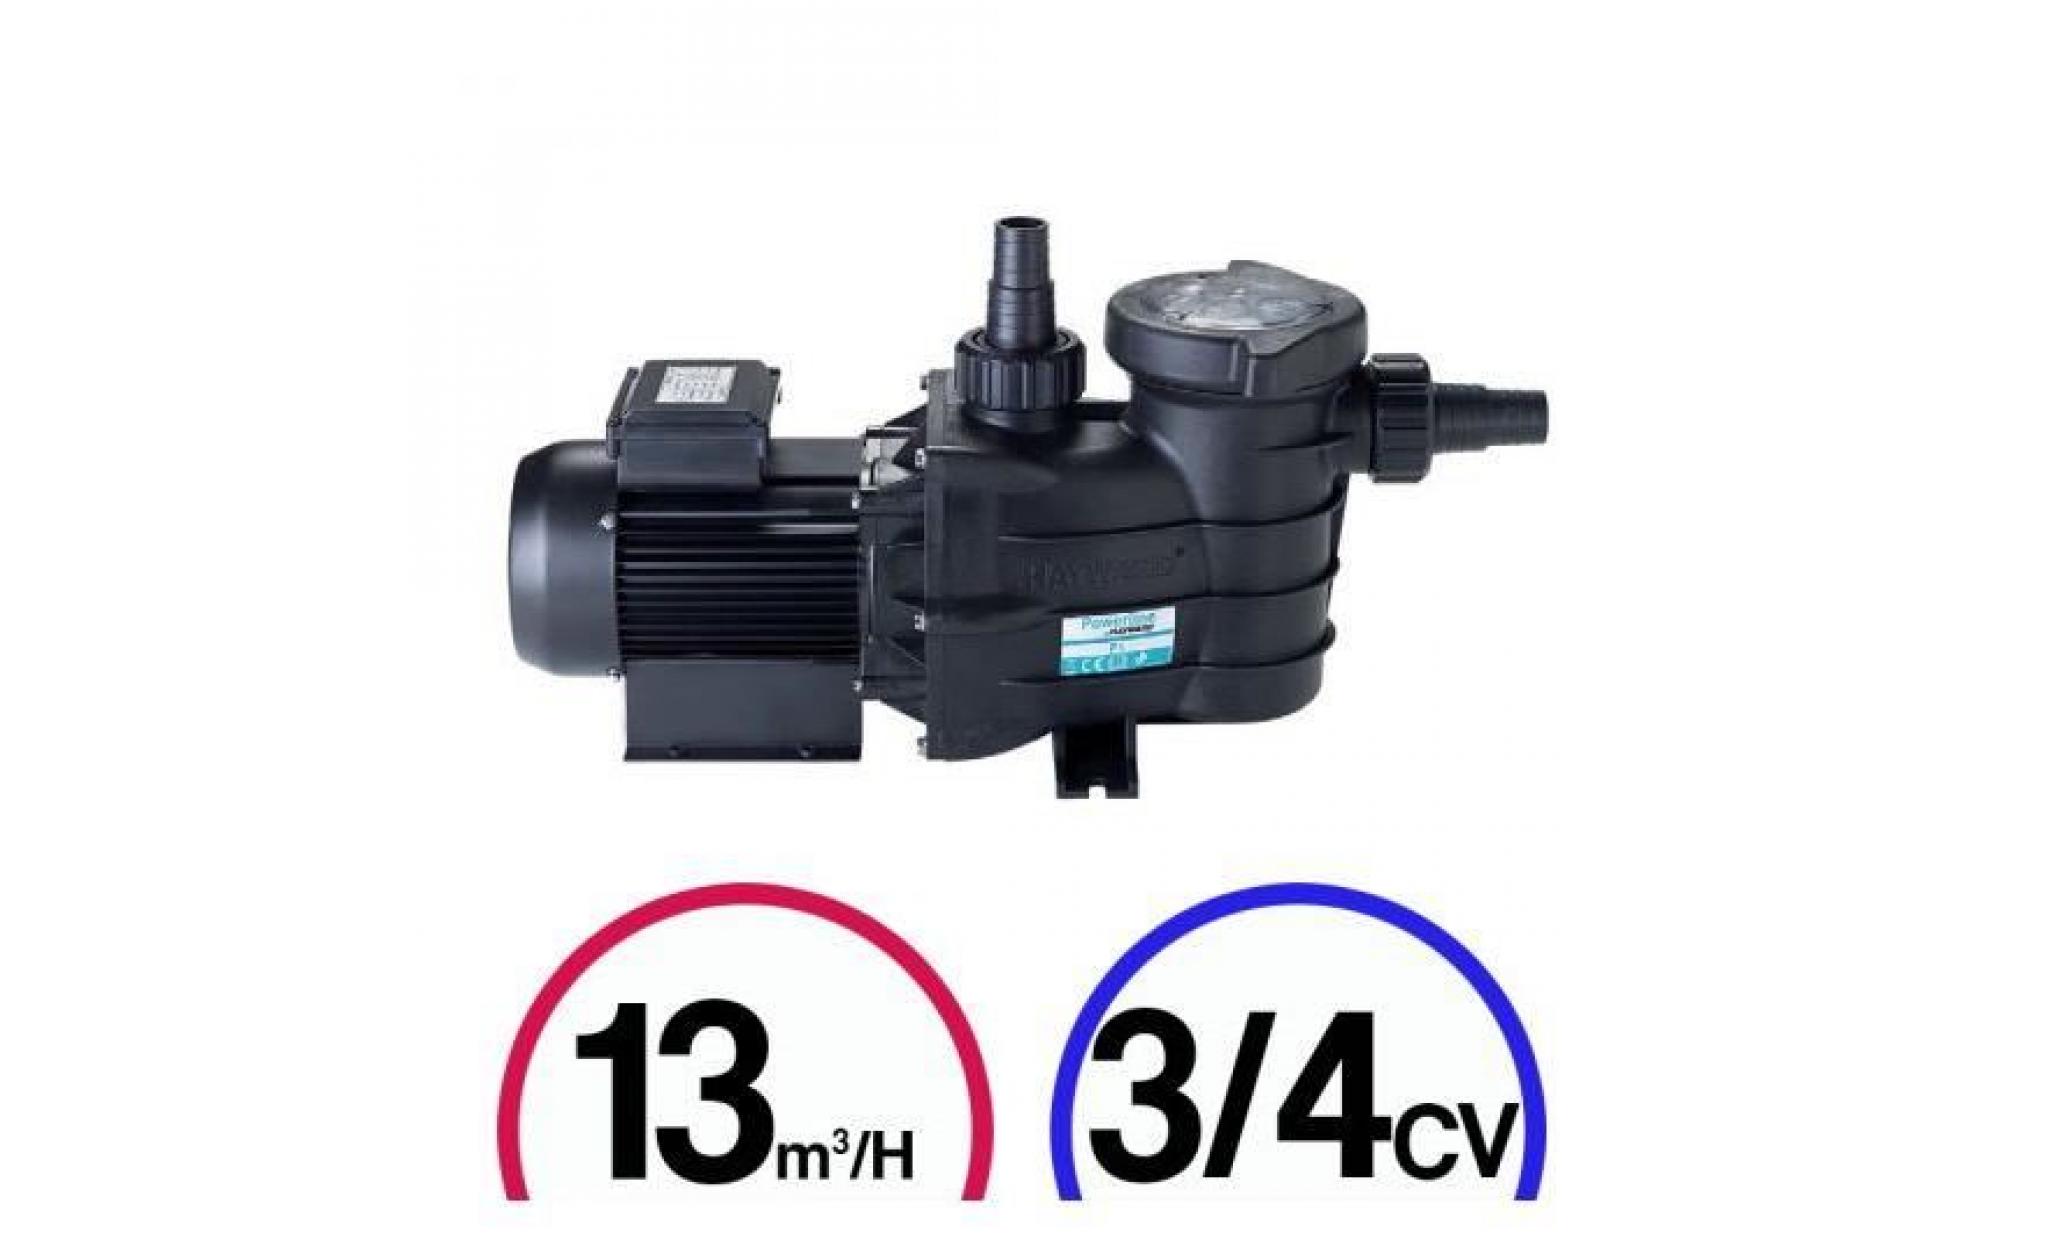 pompe filtration piscine   powerline 3/4cv mono 13m³/h   hayward